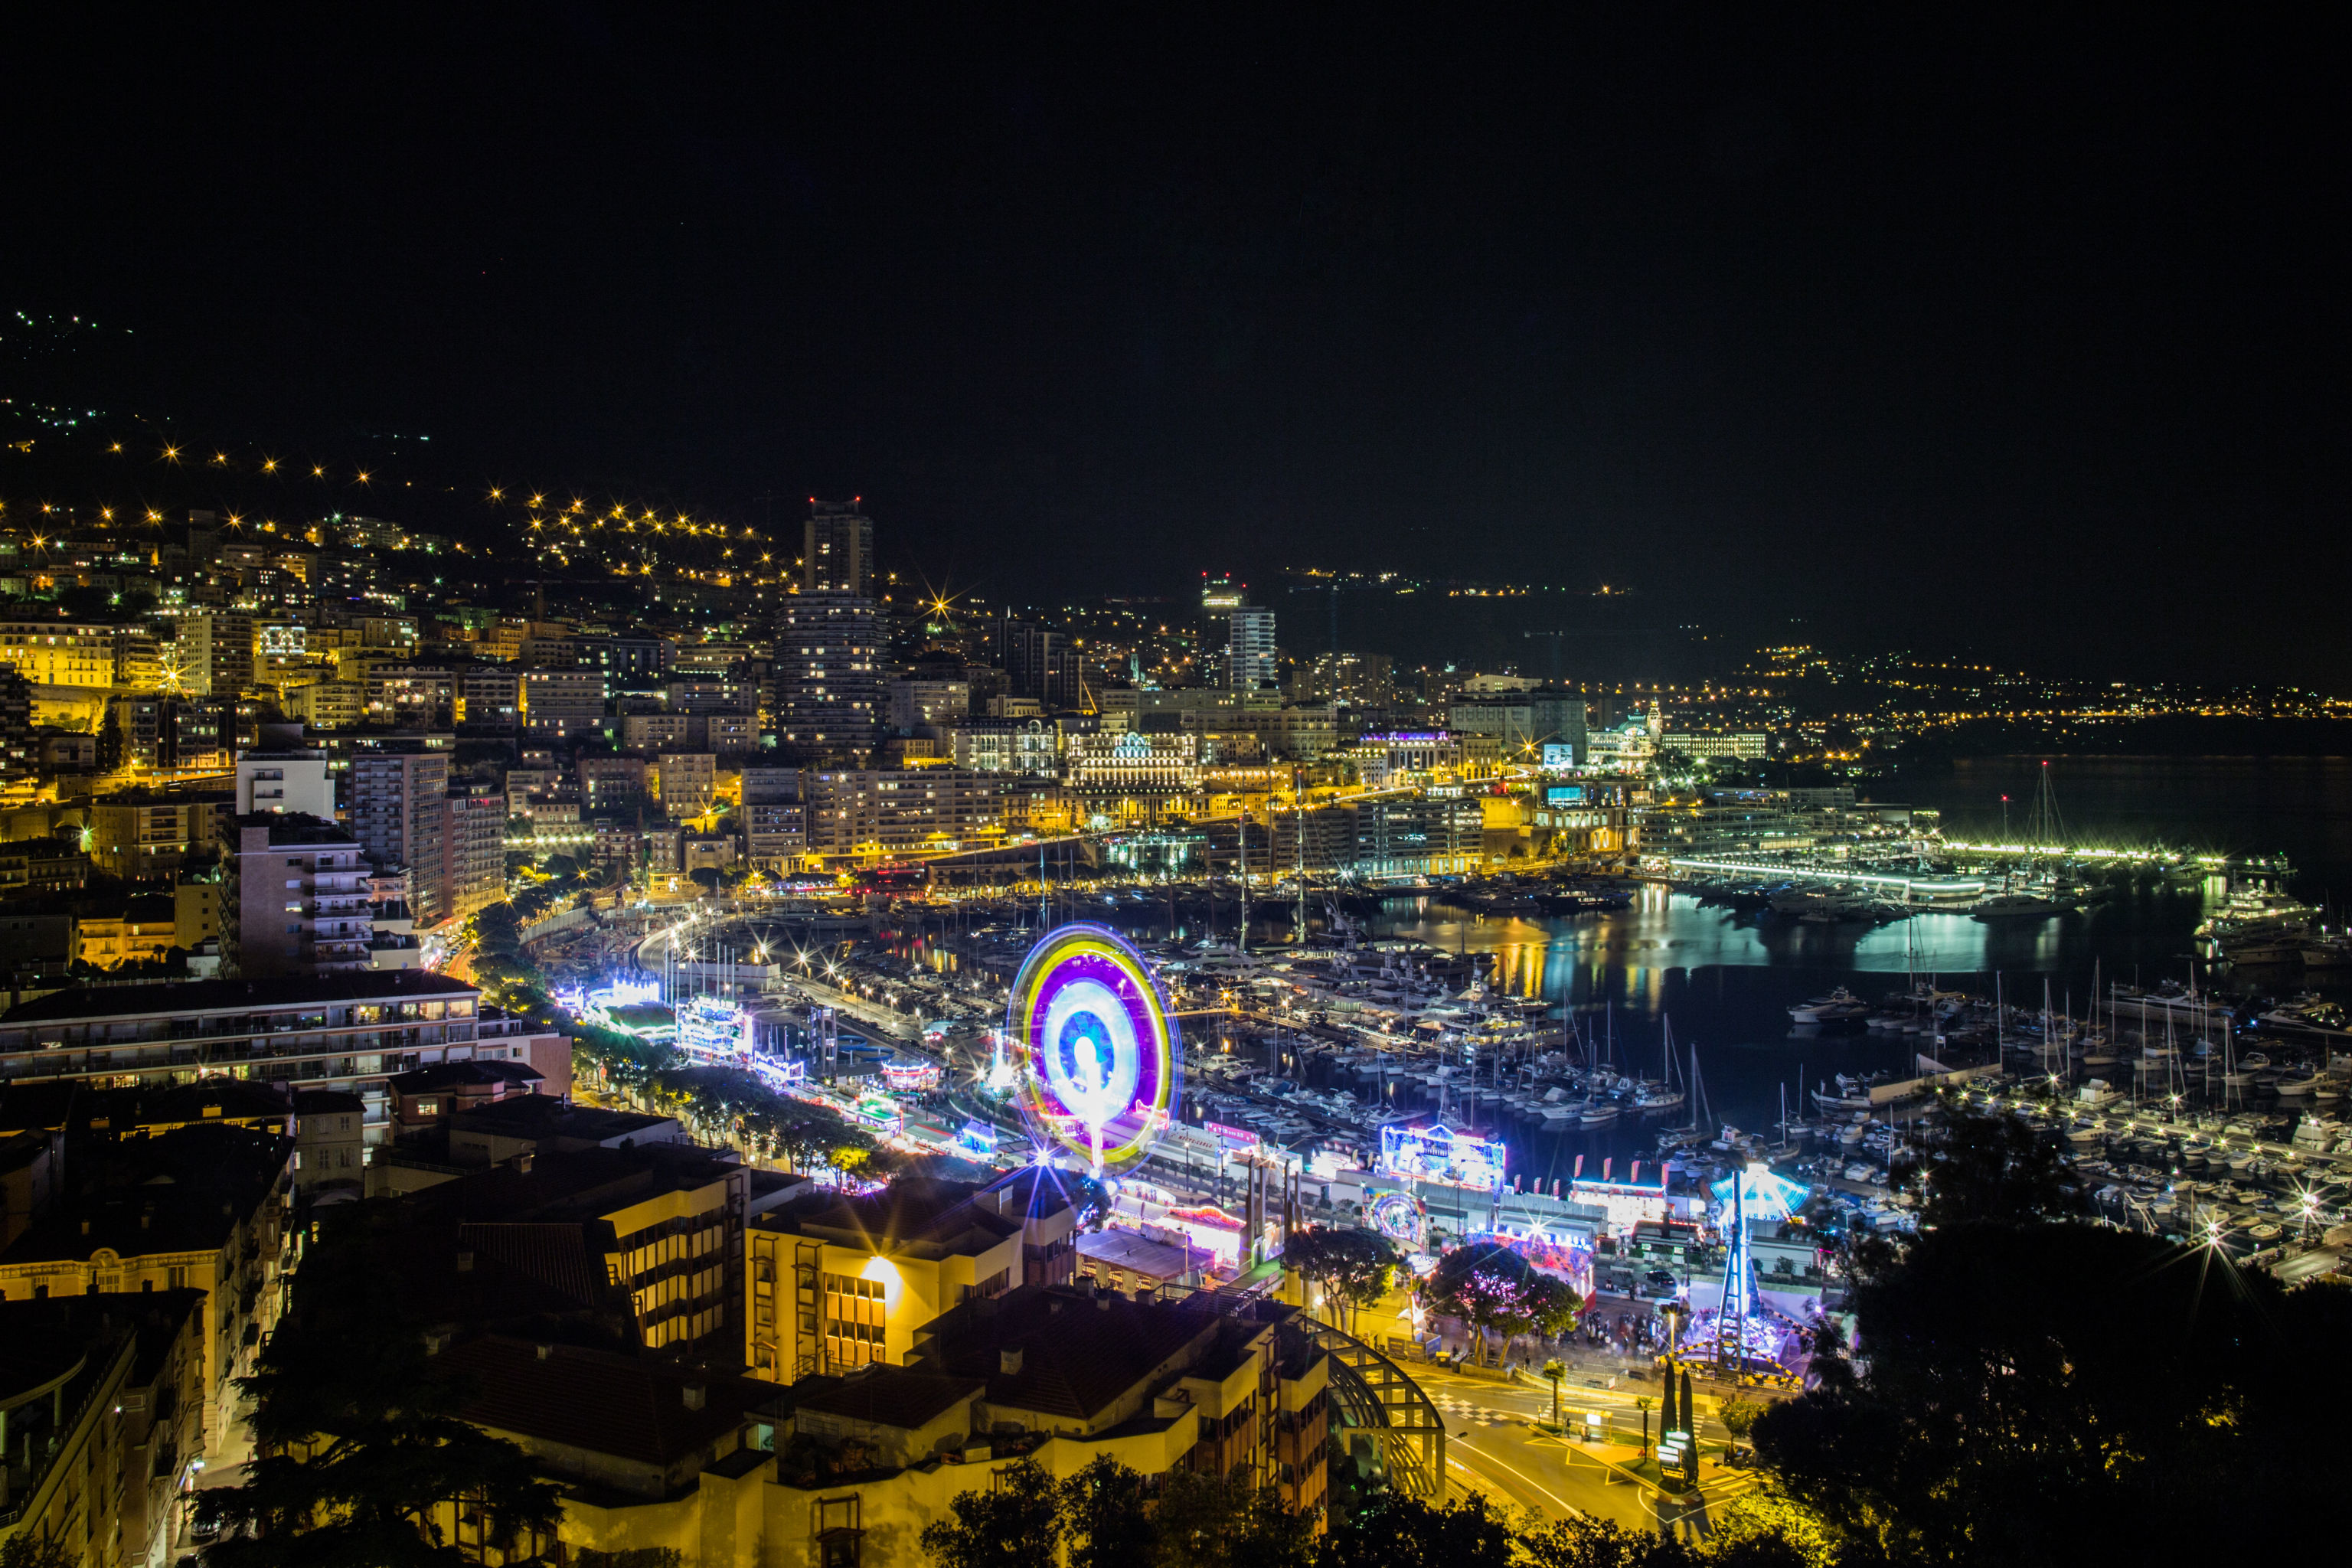 Порт Эркюль в Монако на побережье Лигурийского моря (прибрежная часть Средиземного моря).